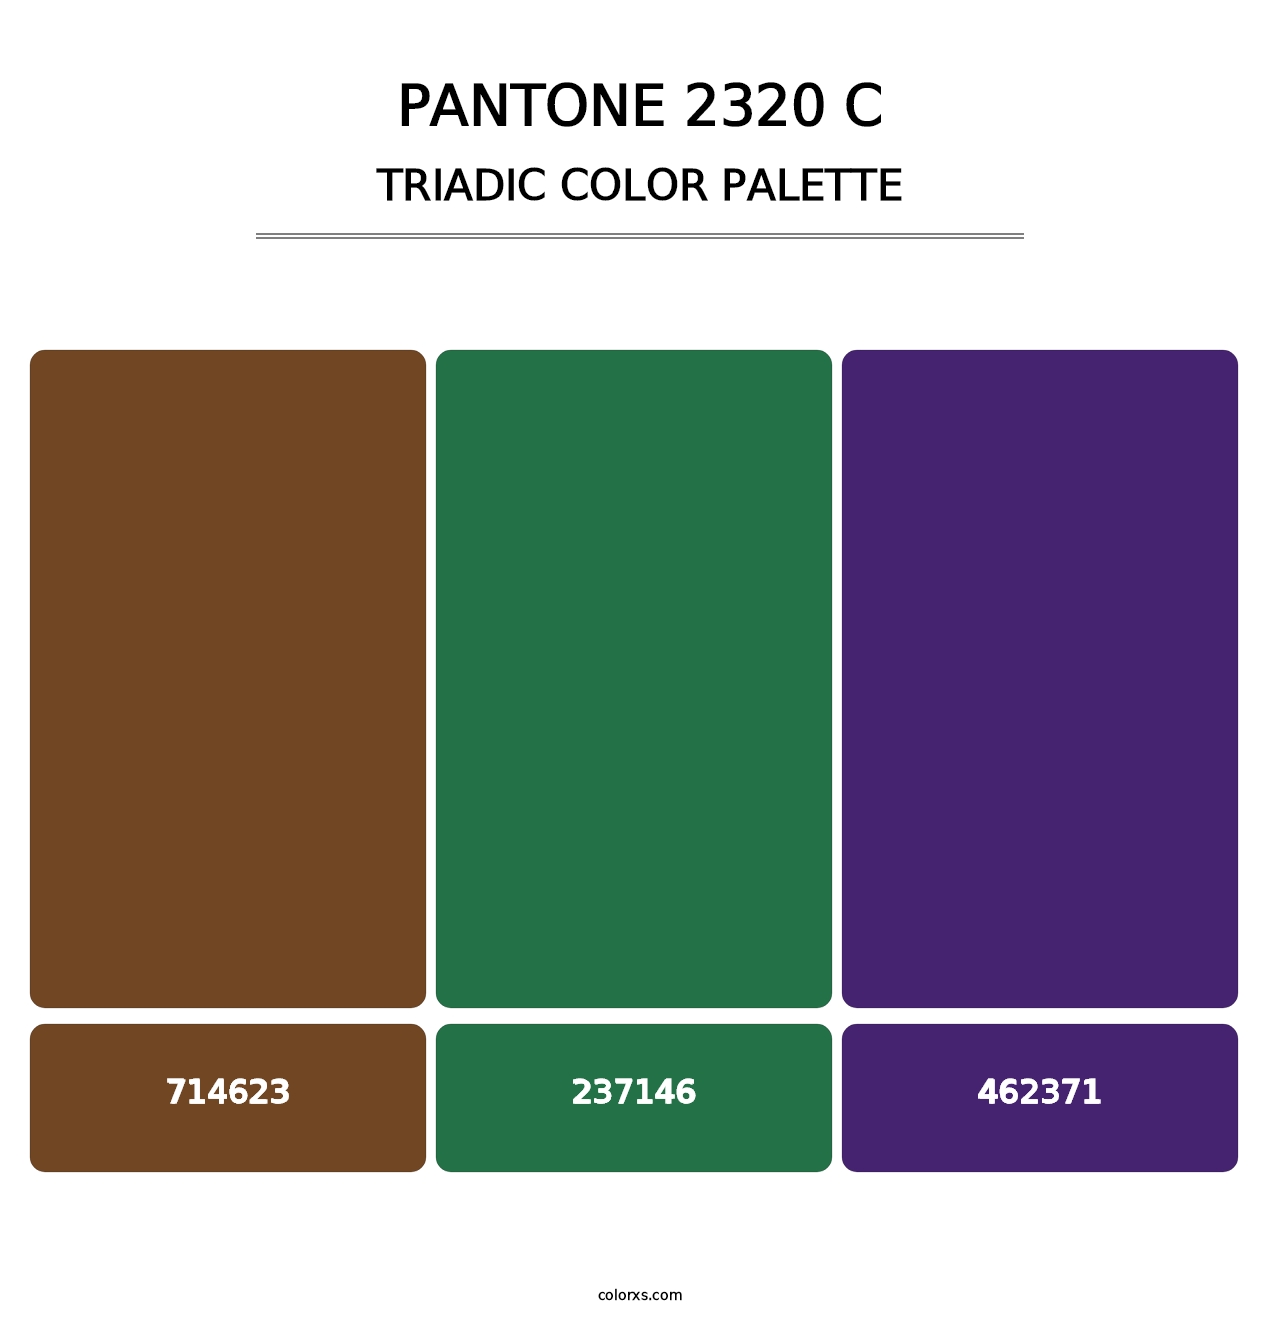 PANTONE 2320 C - Triadic Color Palette